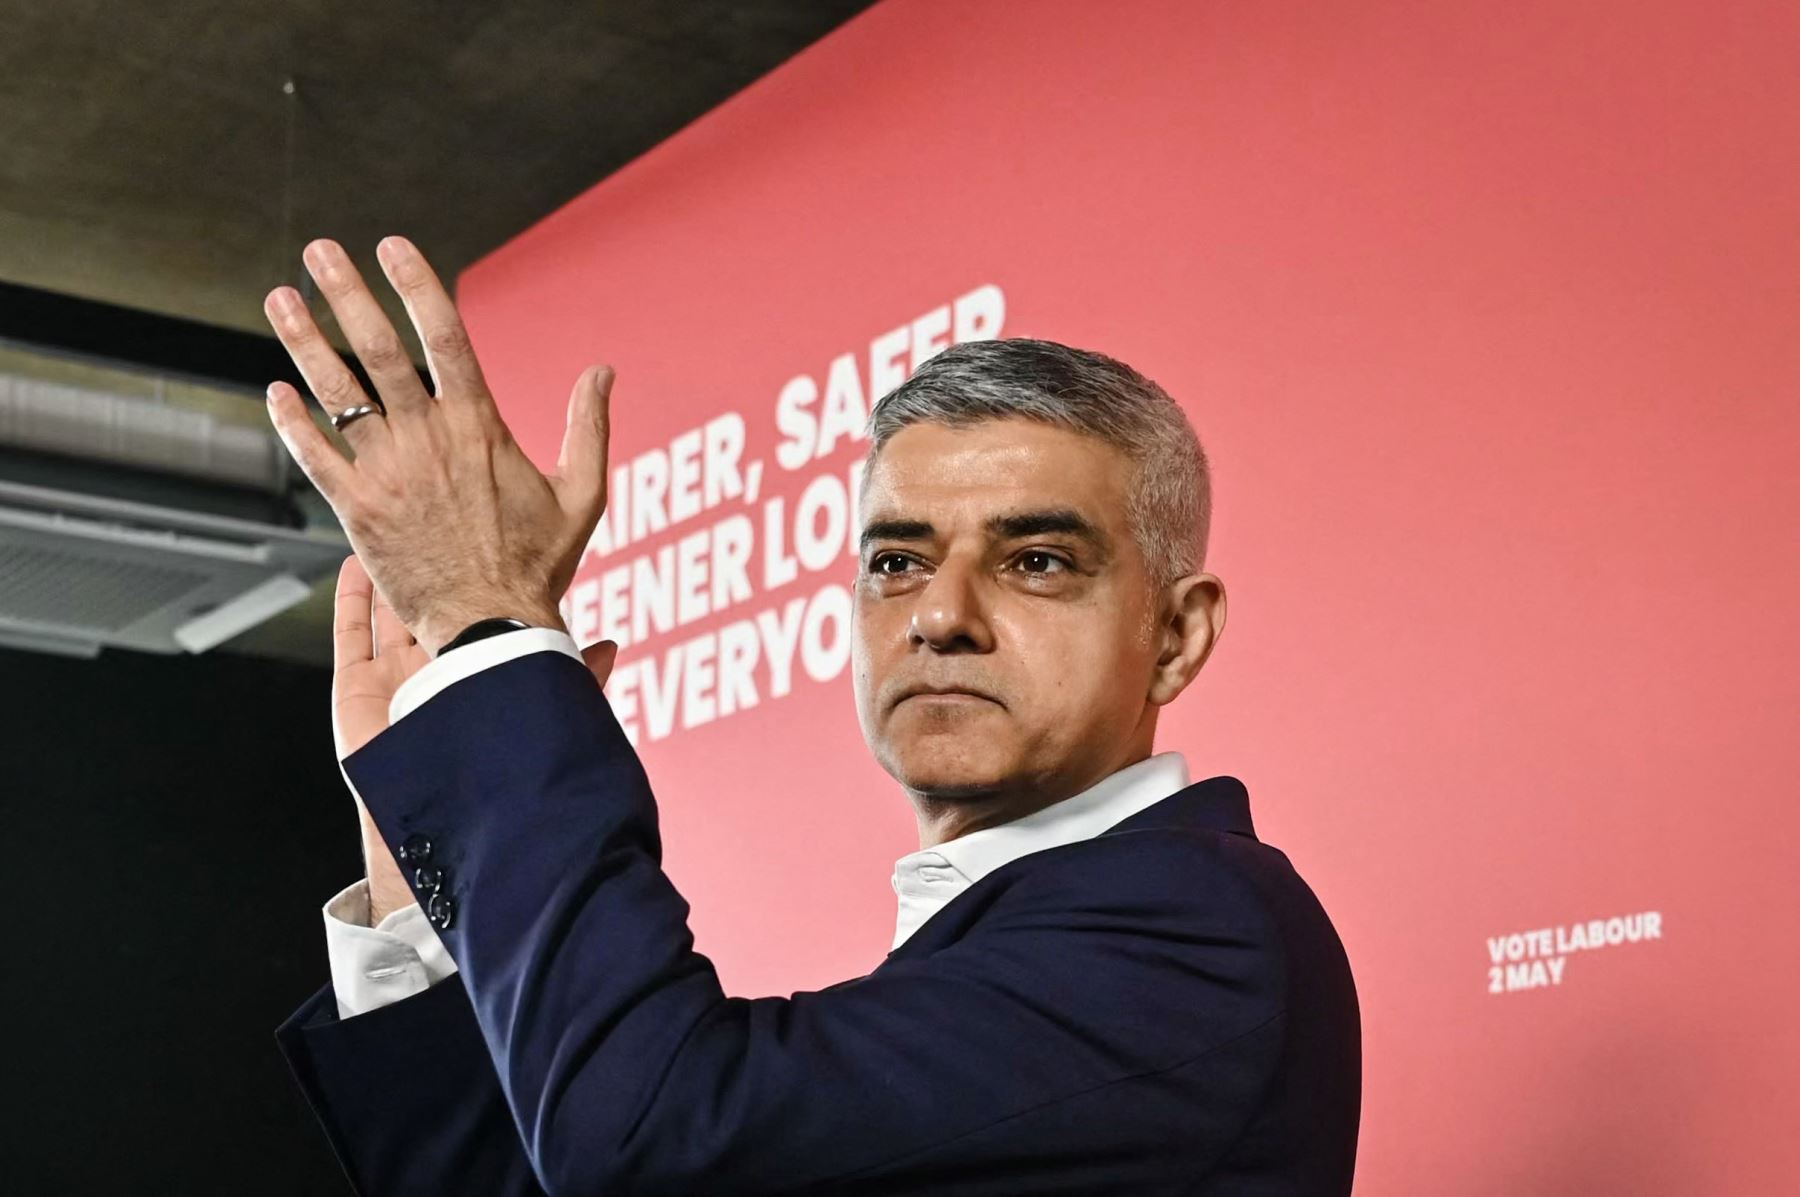 El alcalde de Londres, Sadiq Khan, aplaude después de pronunciar un discurso en el escenario durante el lanzamiento de su manifiesto "Un Londres más justo, más seguro y más verde" en la Unidad del Distrito de Diseño, en Londres, el 18 de abril de 2024, como parte de su campaña política para el Elecciones para alcalde de Londres del 2 de mayo. Foto: AFP